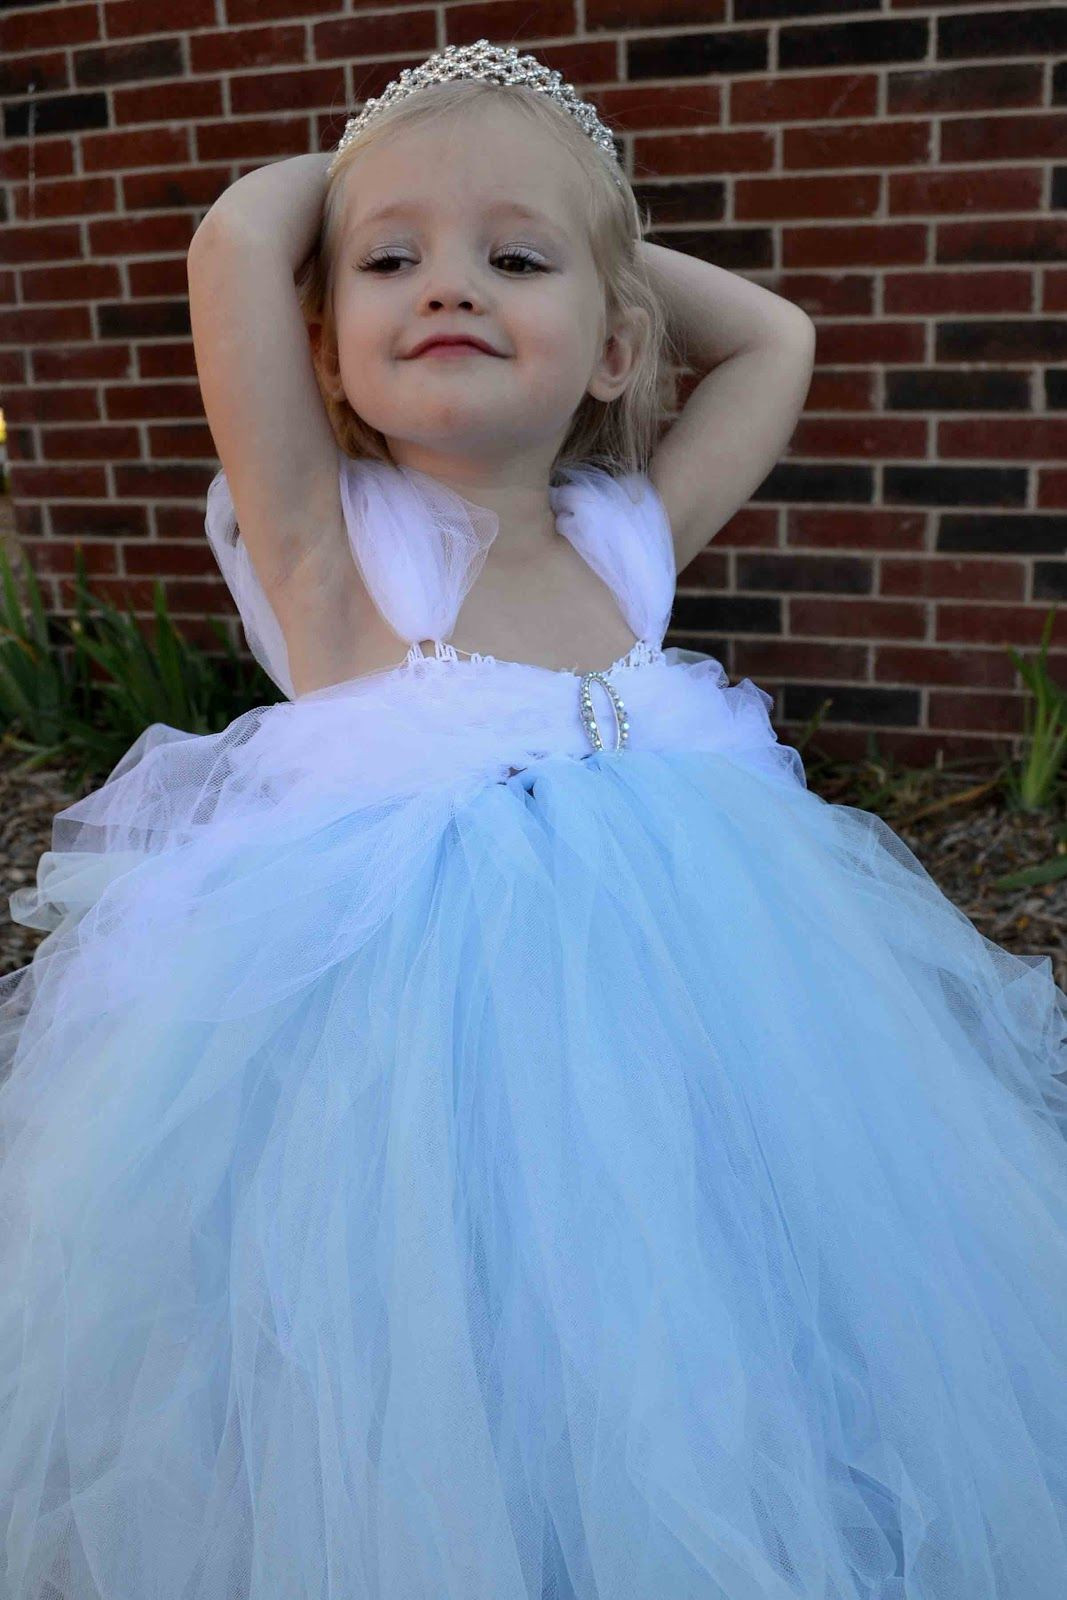 Toddler Tulle Skirt DIY
 DIY Tulle skirts on Pinterest